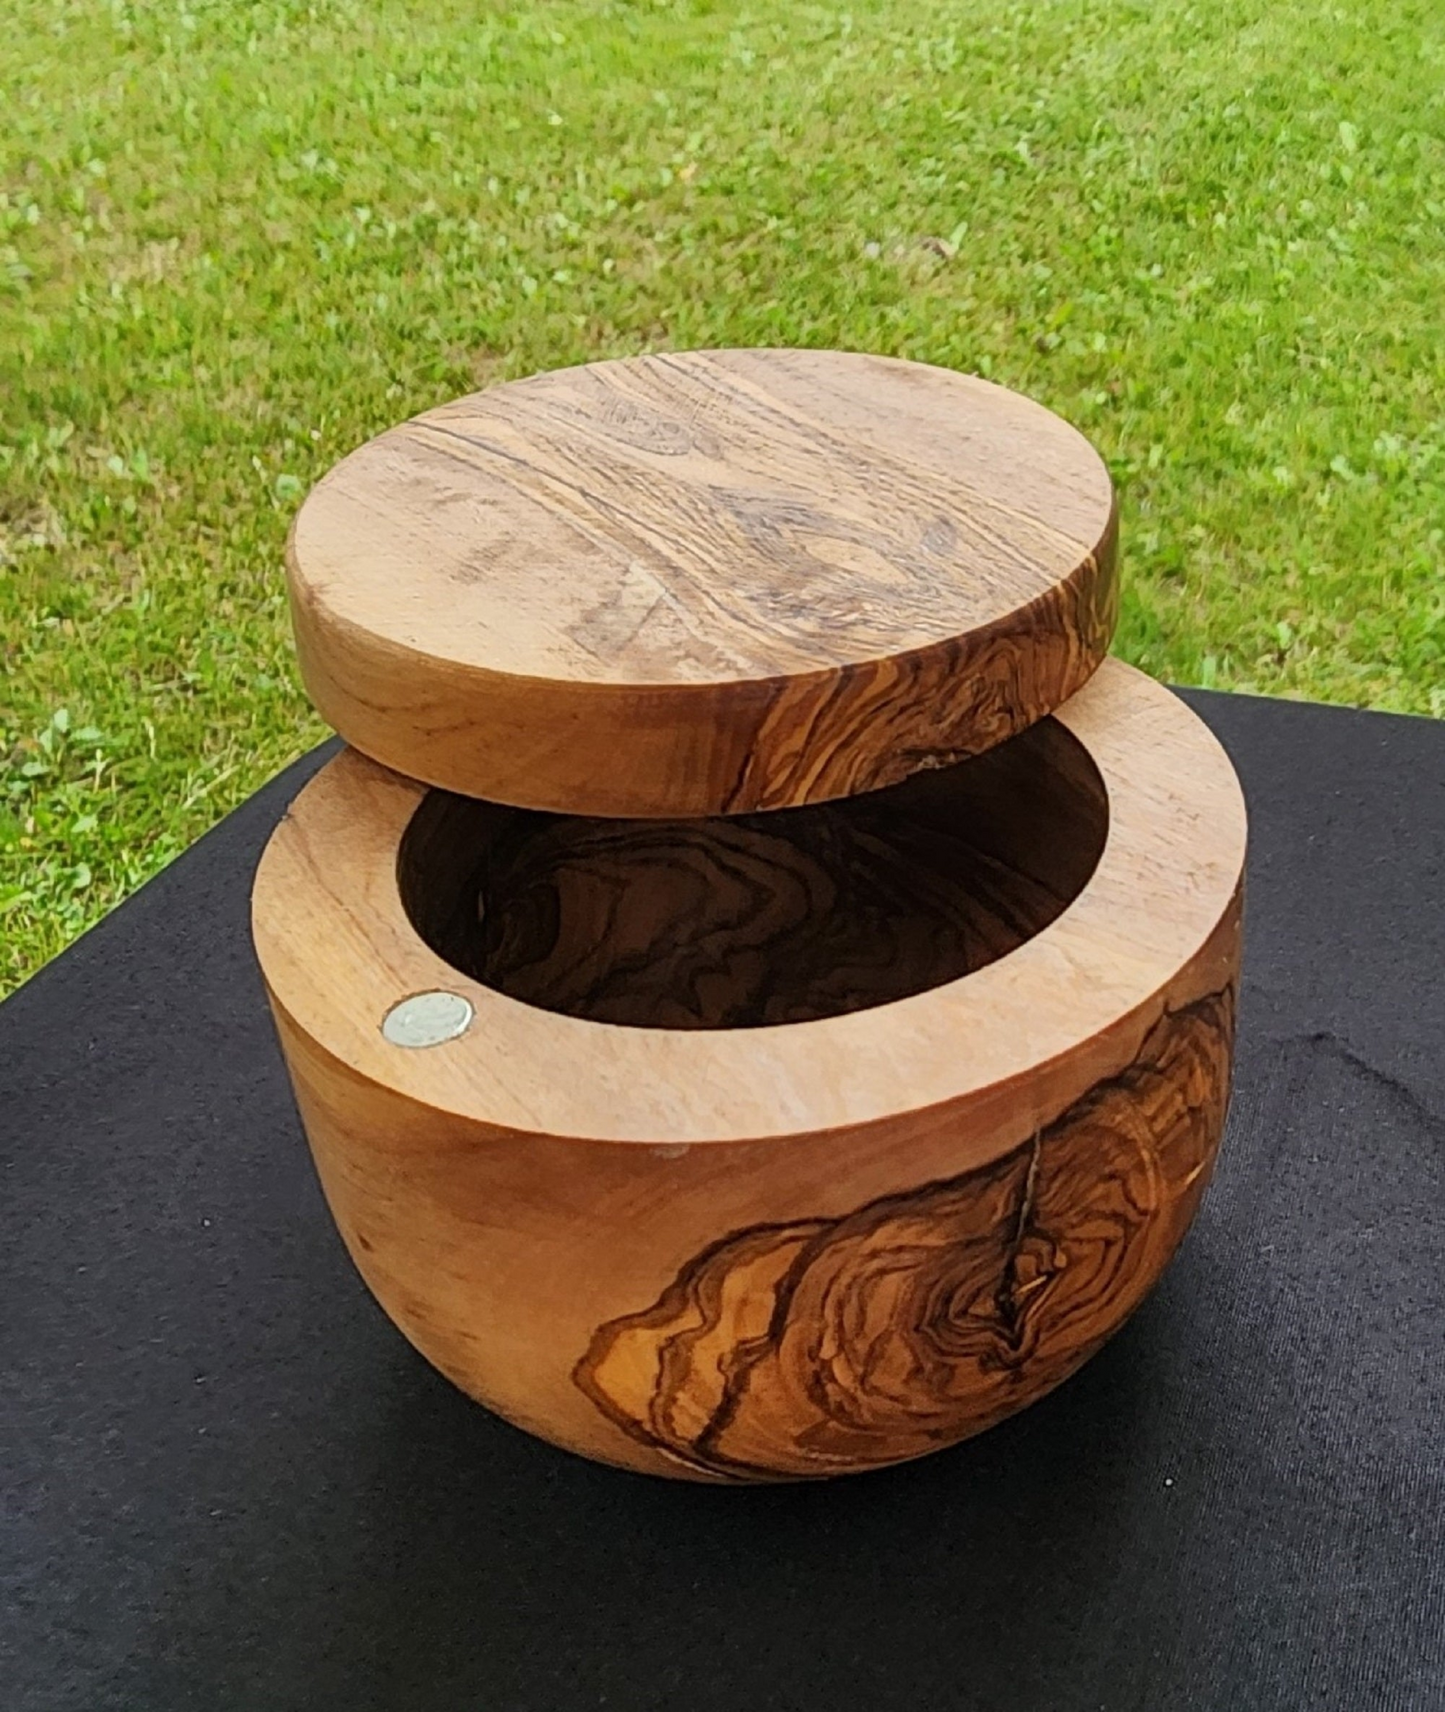 OLIVIKO Handmade Olive Wood Salt keeper box, Salt cellar with magnetic lock